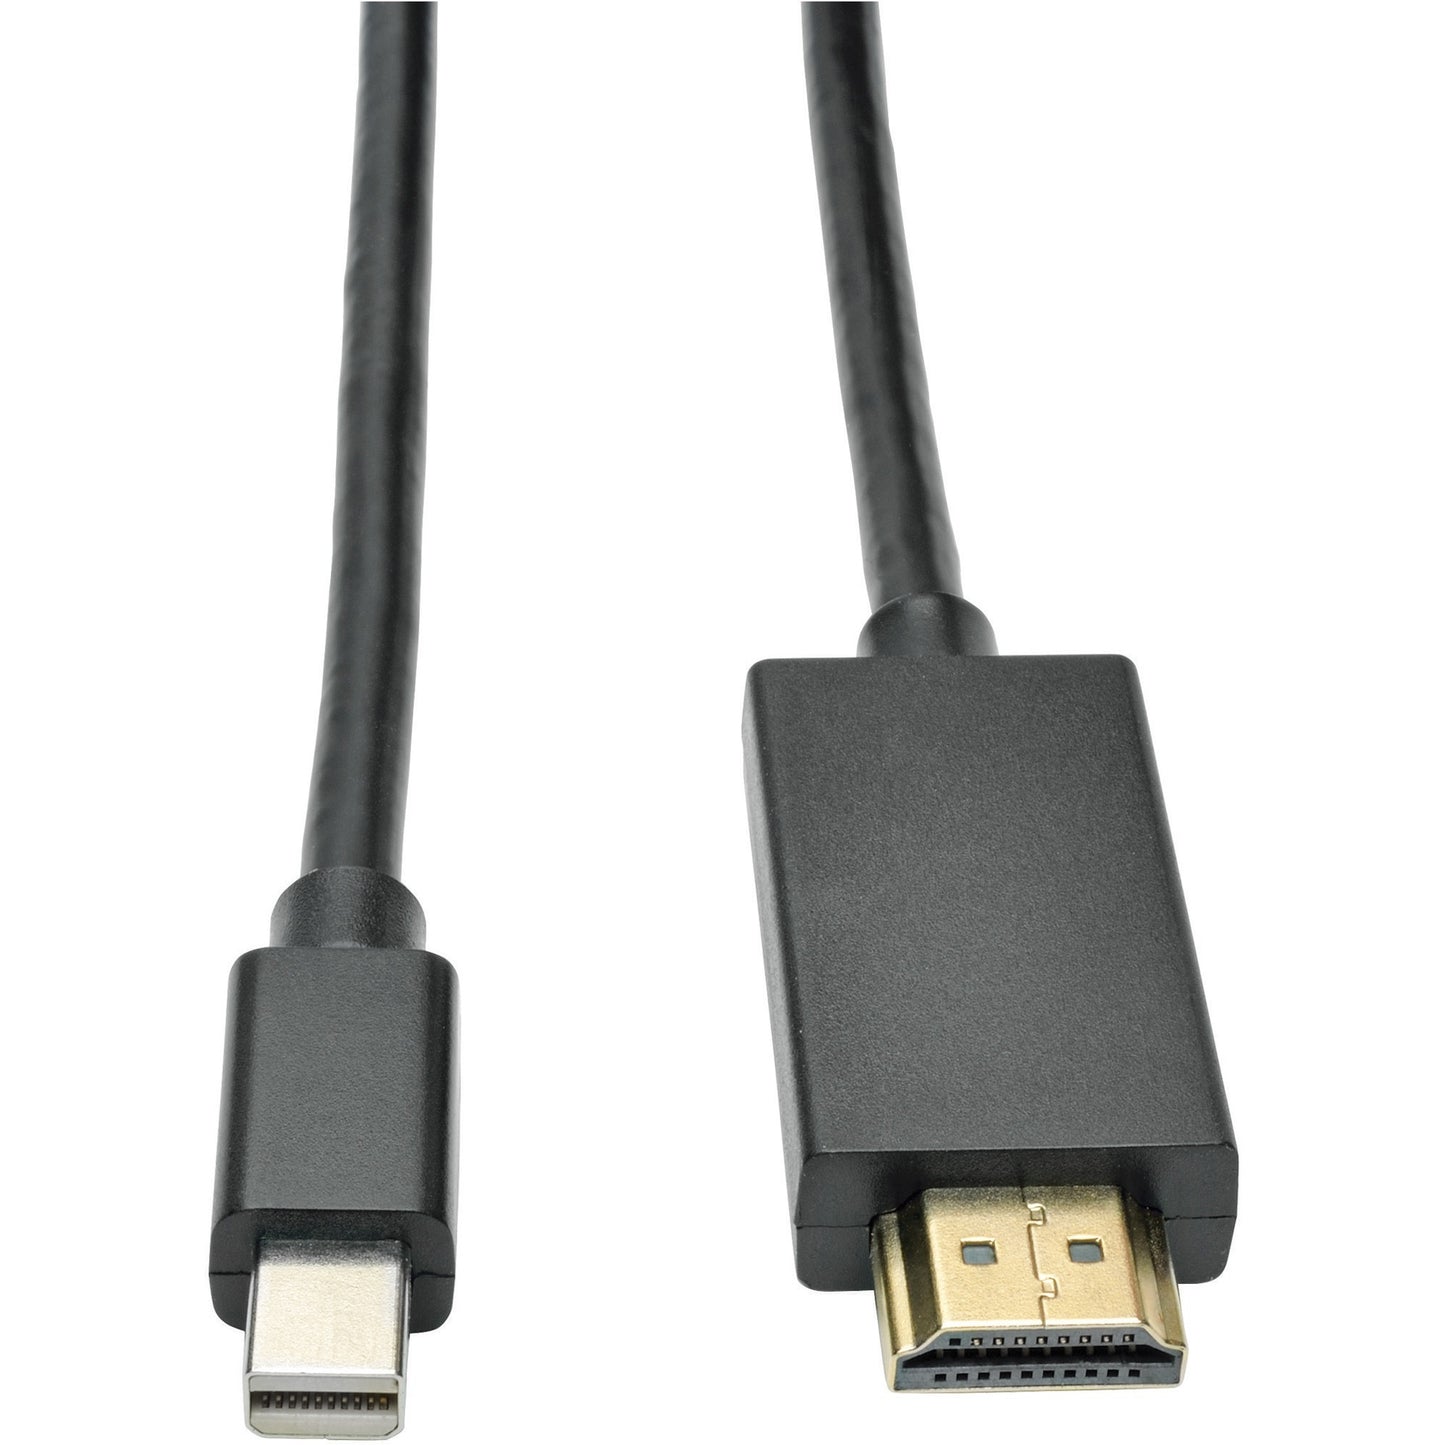 Tripp Lite Mini Displayport to HD Cable Adapter, MDP to HDMI (M/M), MDP2HDMI, 1080p, 6 ft. (P586-006-HDMI),Black - USA Supply